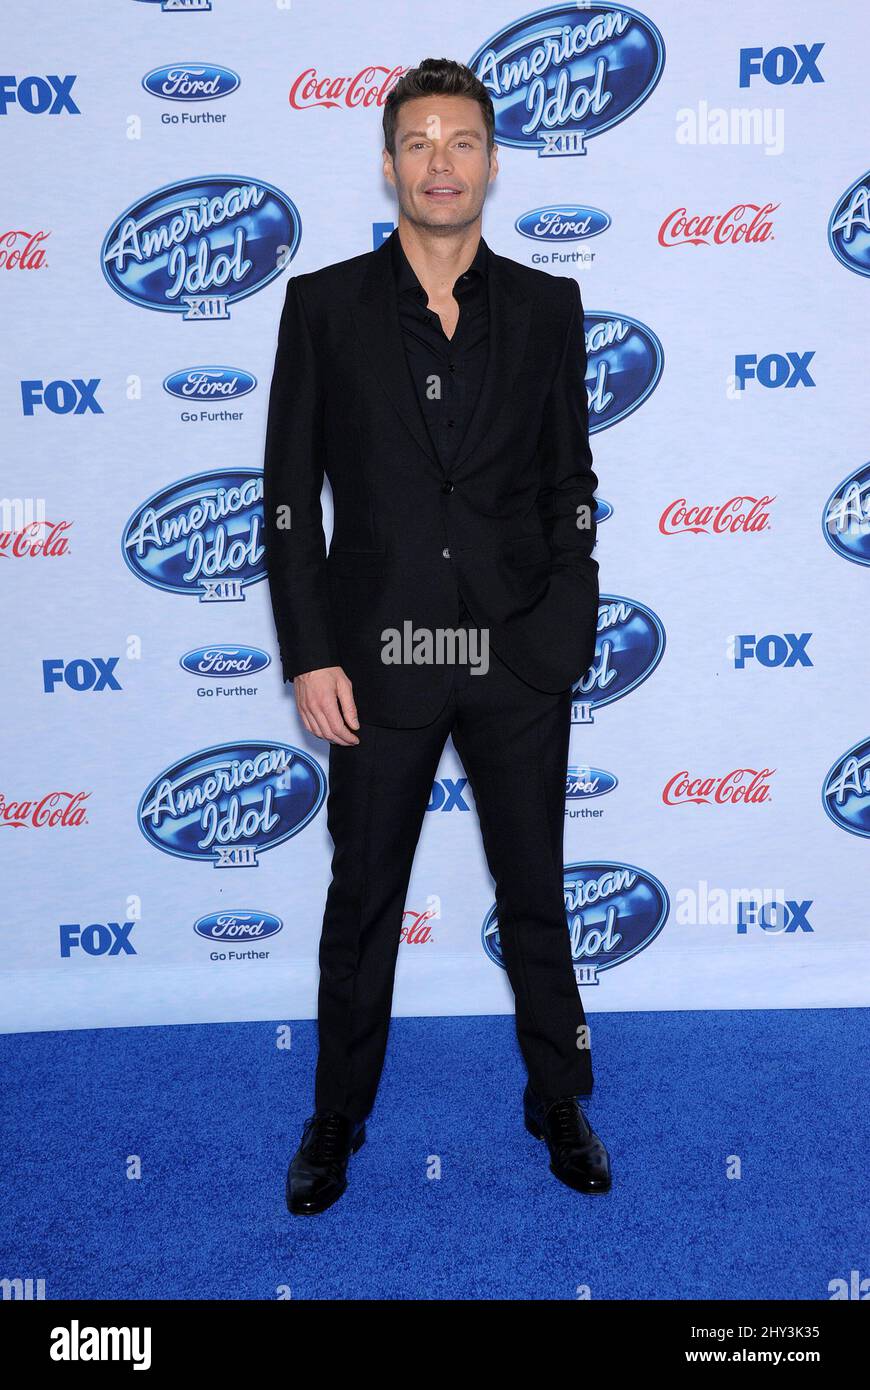 Ryan Seacrest participe à l'événement des 13 finalistes de l'American Idol, à Los Angeles Banque D'Images